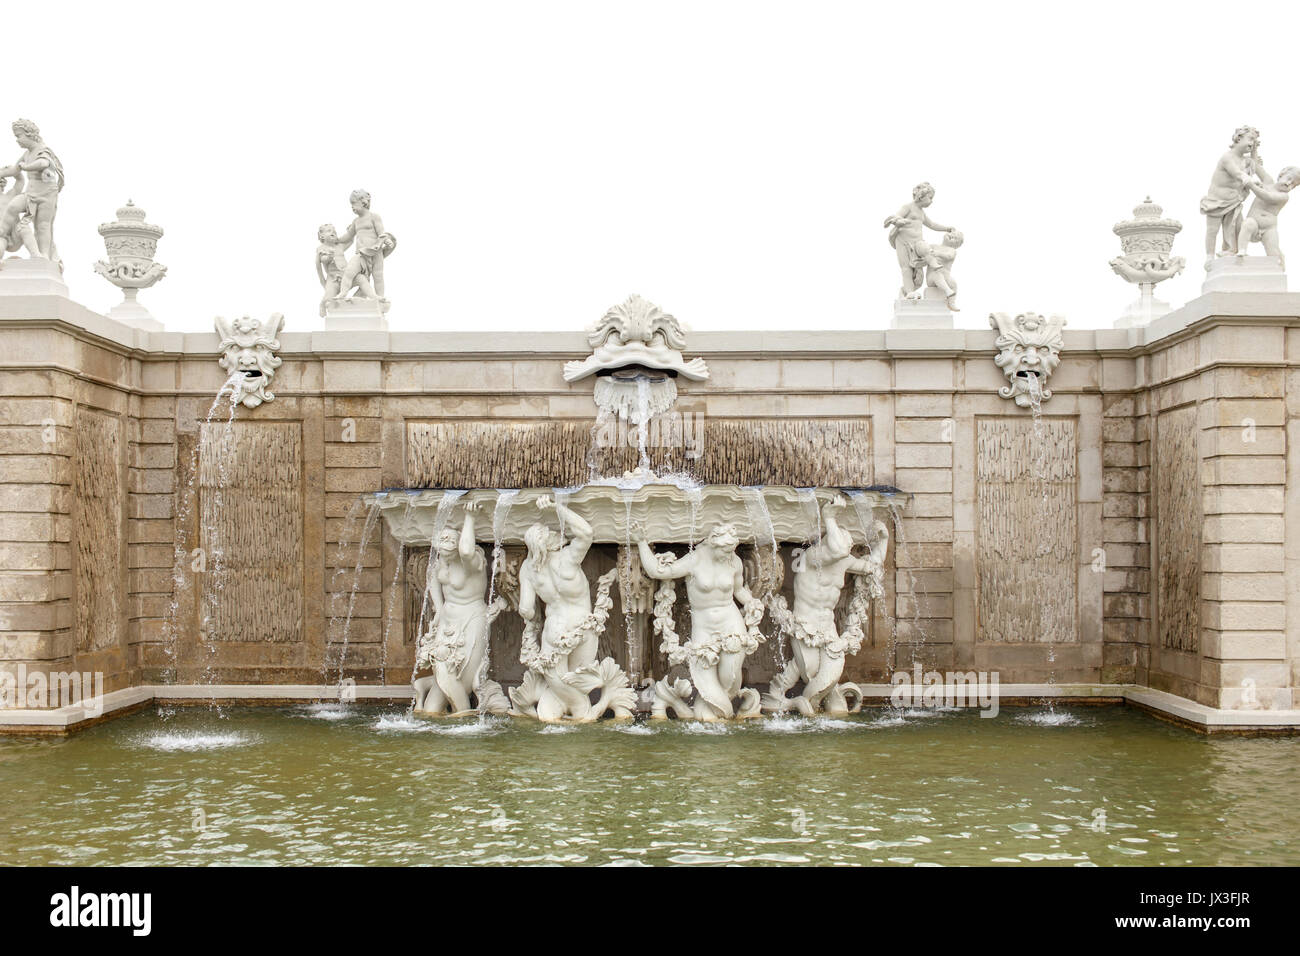 Fontana barocca con mascheroni in giardino Belvedere, Vienna, Austria, isolato su bianco Foto Stock